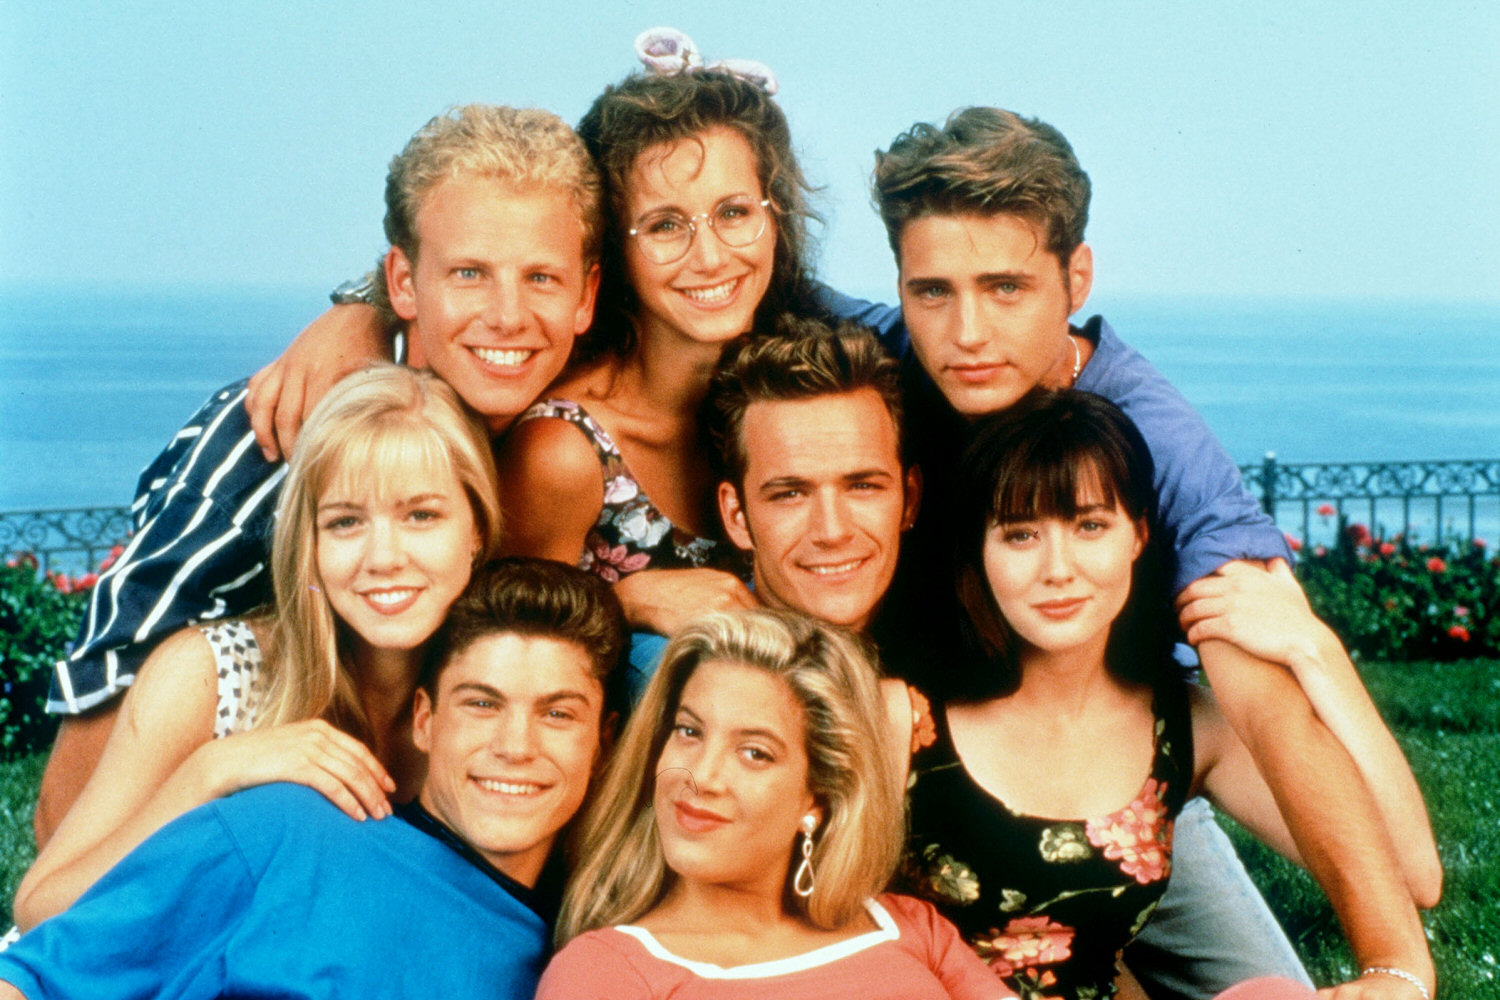 Así los actores de la serie “Beverly Hills 90210” 25 años después (Fotos)